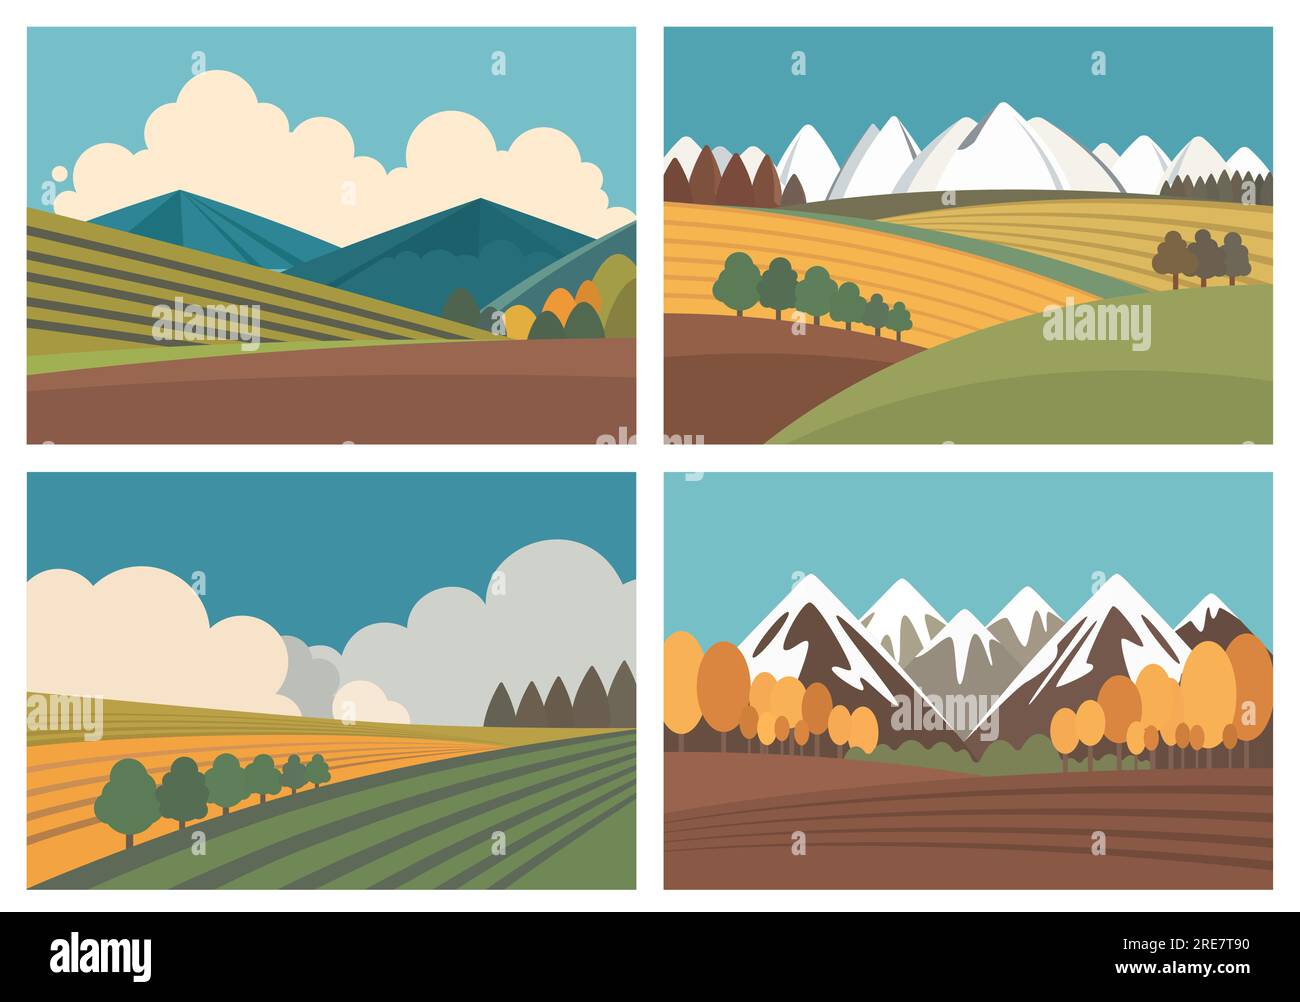 Vektordarstellung der Landschaft mit Bergen, Bäumen, Himmel und Wolken. Landwirtschaftlicher Hintergrund in flachen Retro-Farben. Stock Vektor